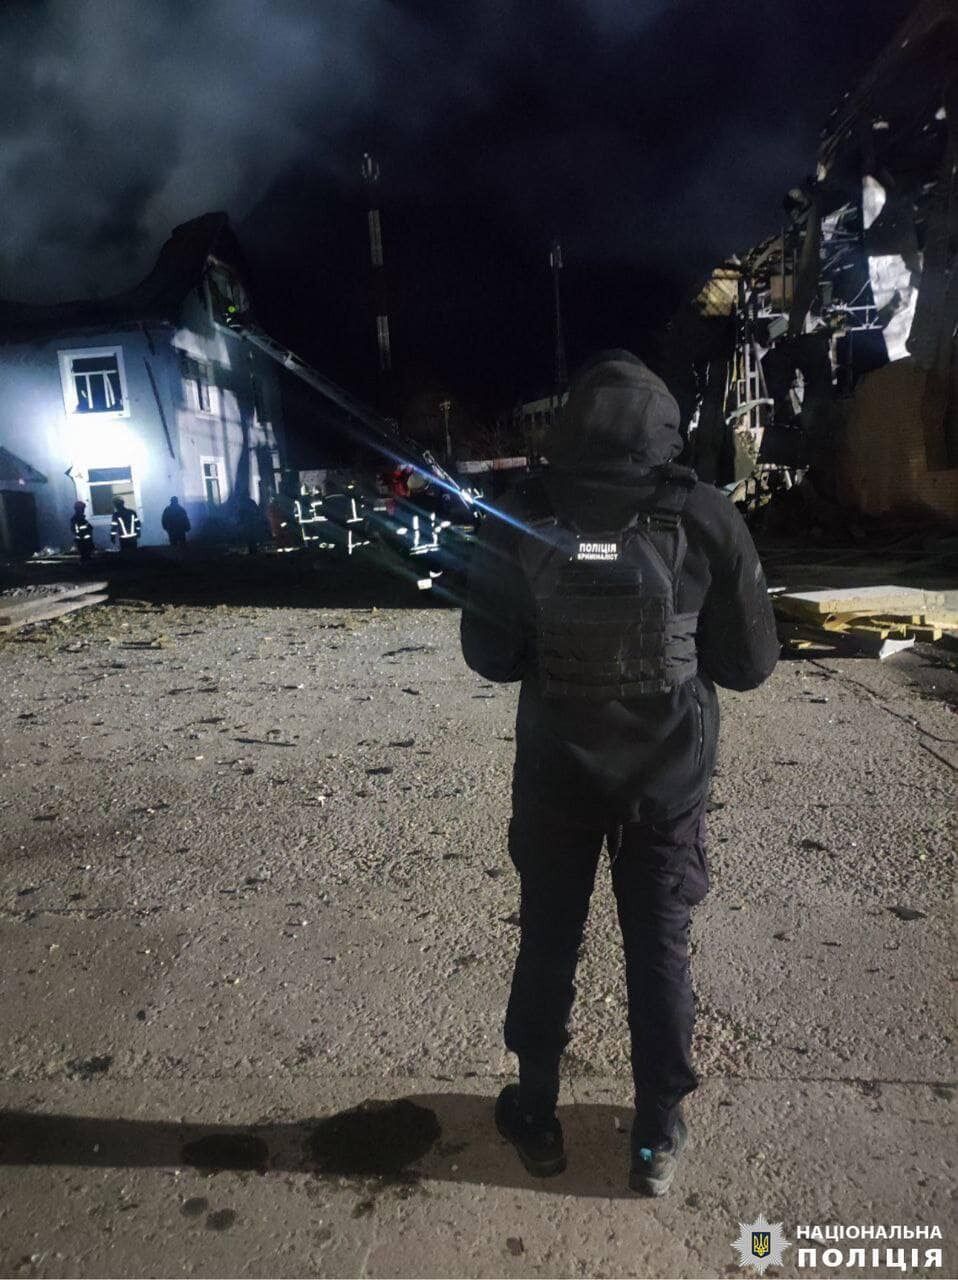 Була пожежа, пошкоджено будівлю та автомобілі: наслідки атаки дронами на Київщині 30 січня. Фото